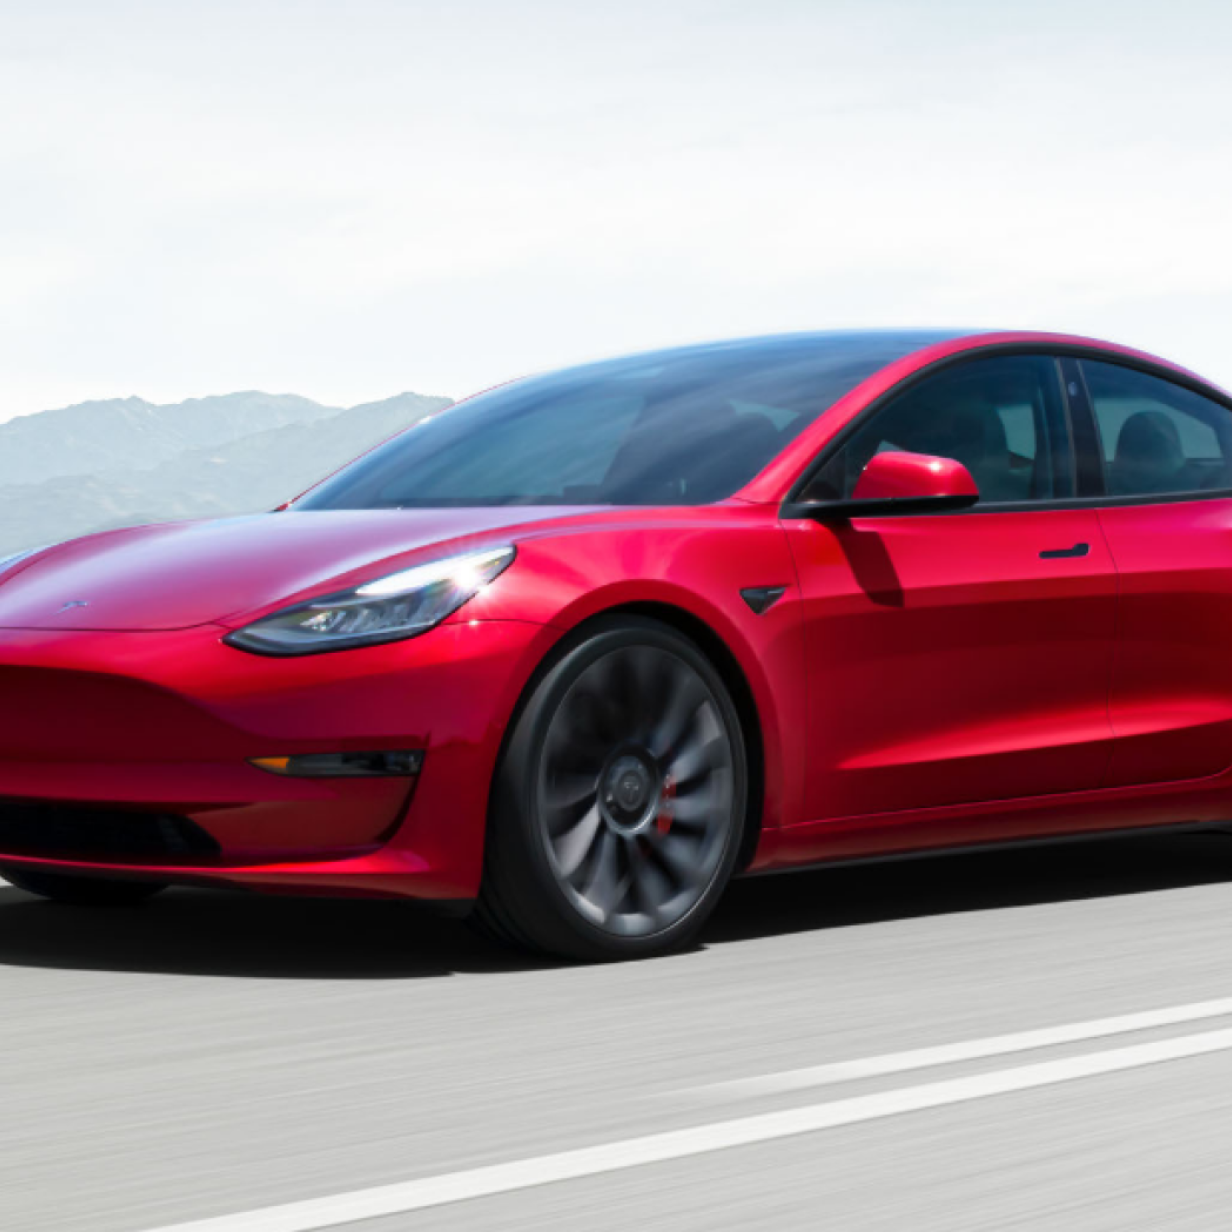 Projekt Highland: Tesla Model 3 wird überarbeitet